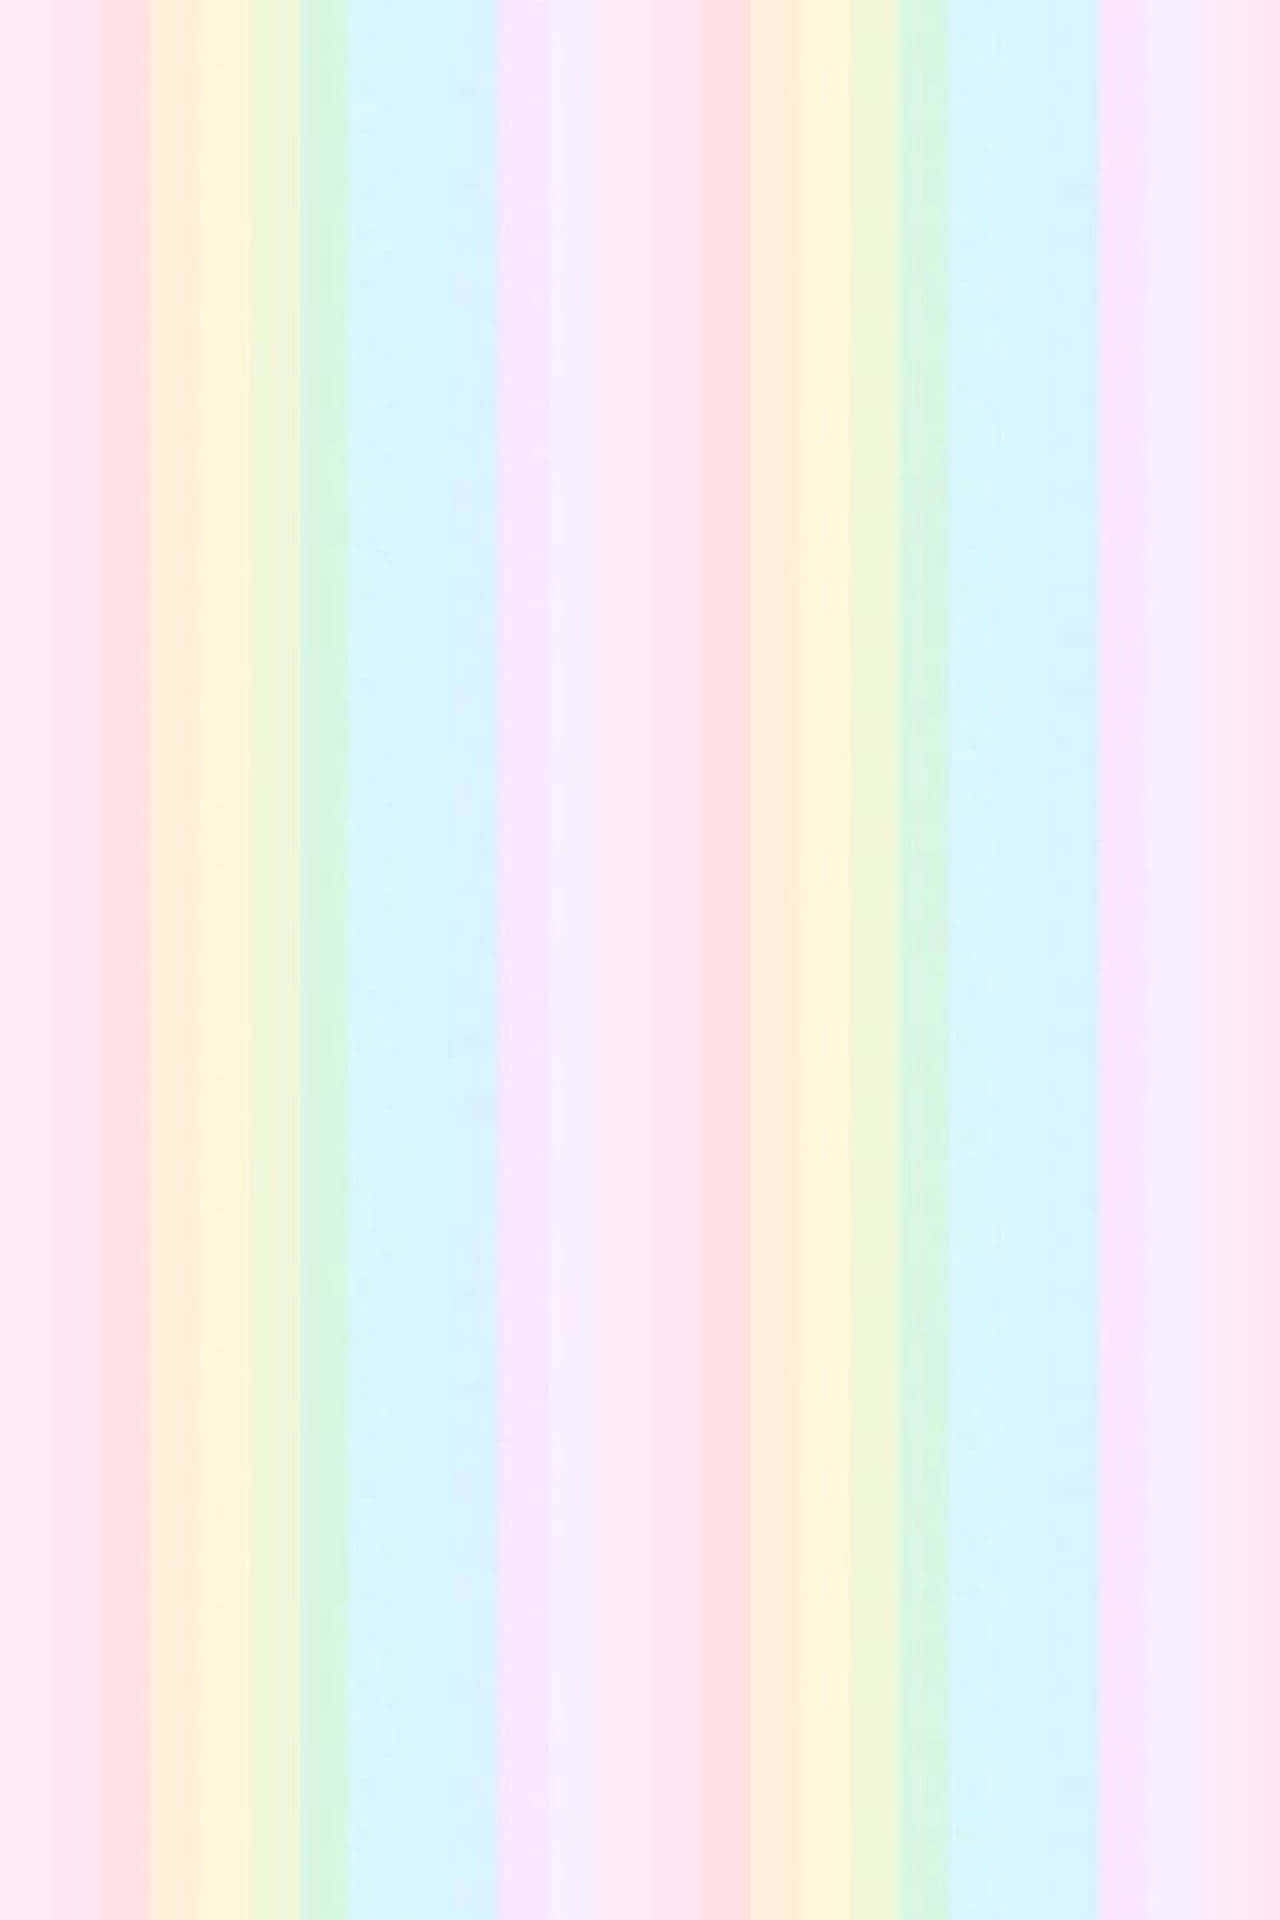 Tilføjen Splash Af Farve Til Dit Skrivebord Med Denne Pastel Rainbow Baggrund.